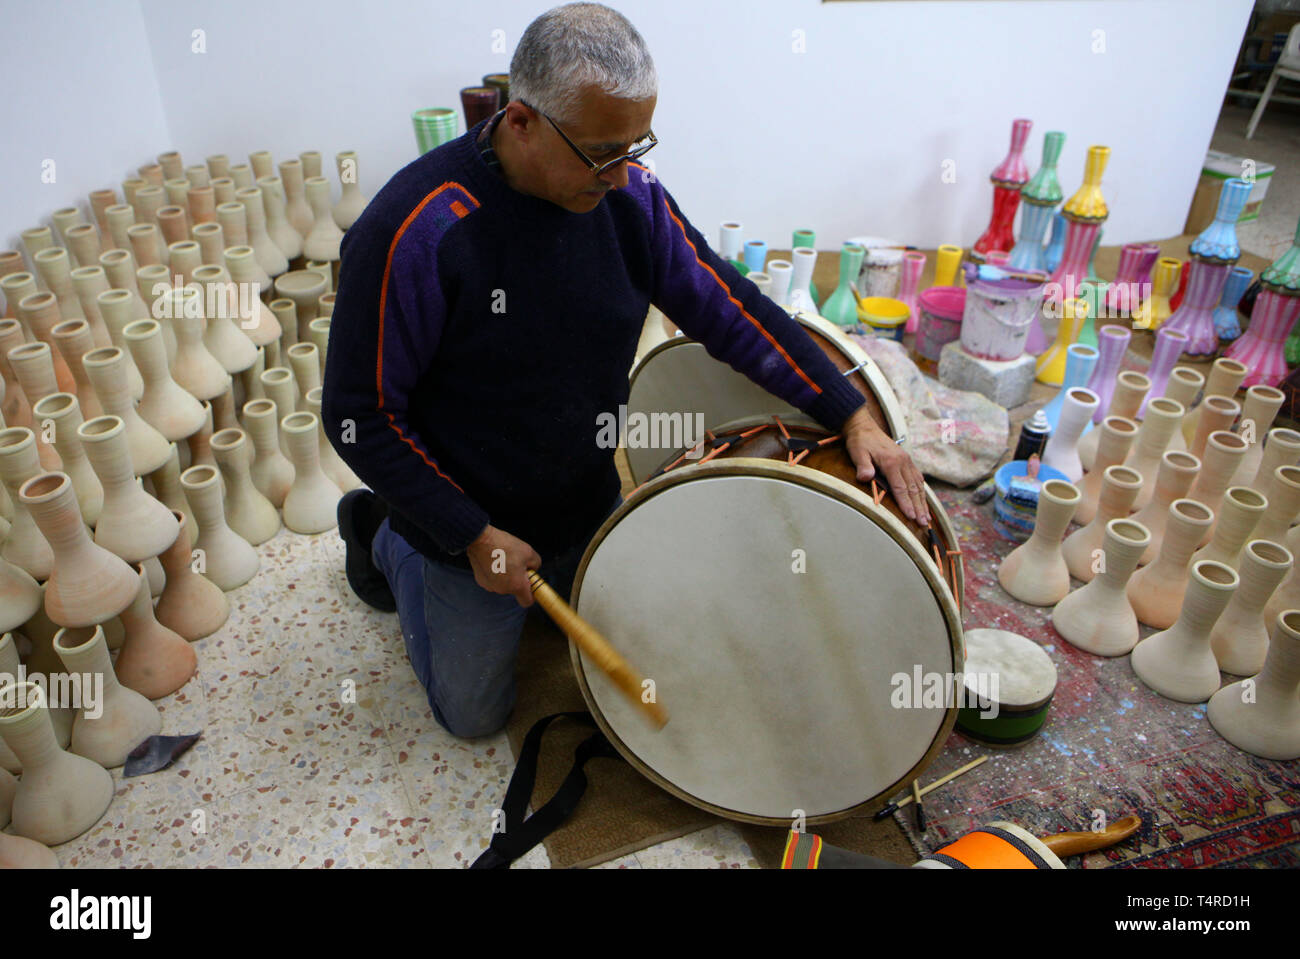 Hebron. Xviii Apr, 2019. Palestinesi Ayoub artigianale al-Zaatari risolve  un tamburo come lavora dentro la sua officina in Cisgiordania città di  Hebron, 18 aprile 2019. Ayoub al-Zaatari, 55, produce vari tipi di